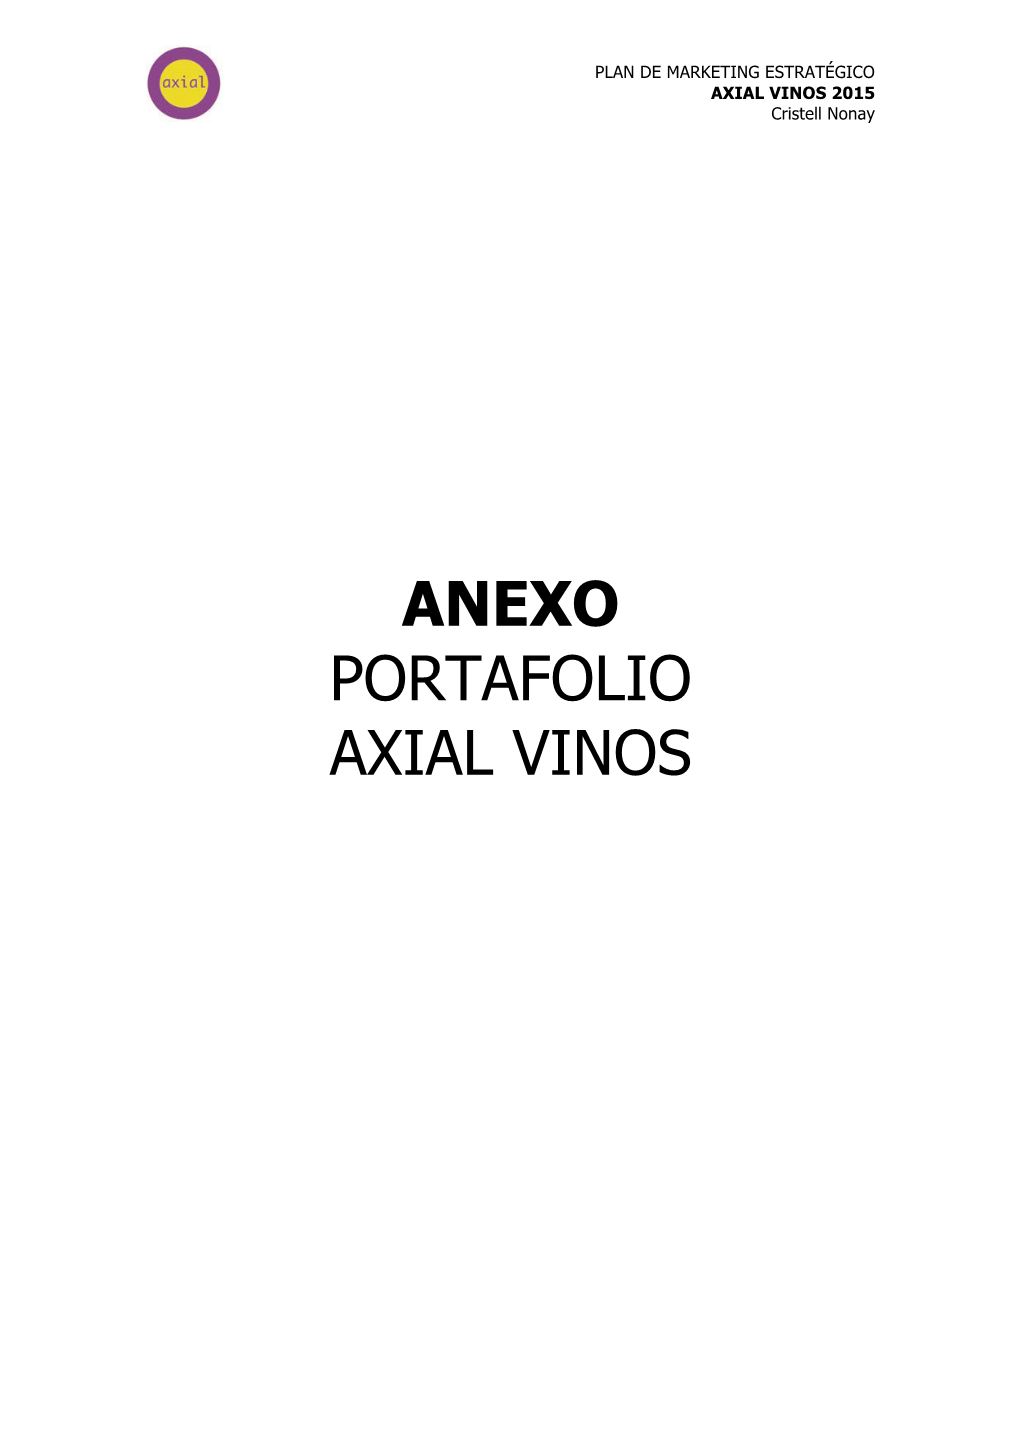 Anexo Portafolio Axial Vinos